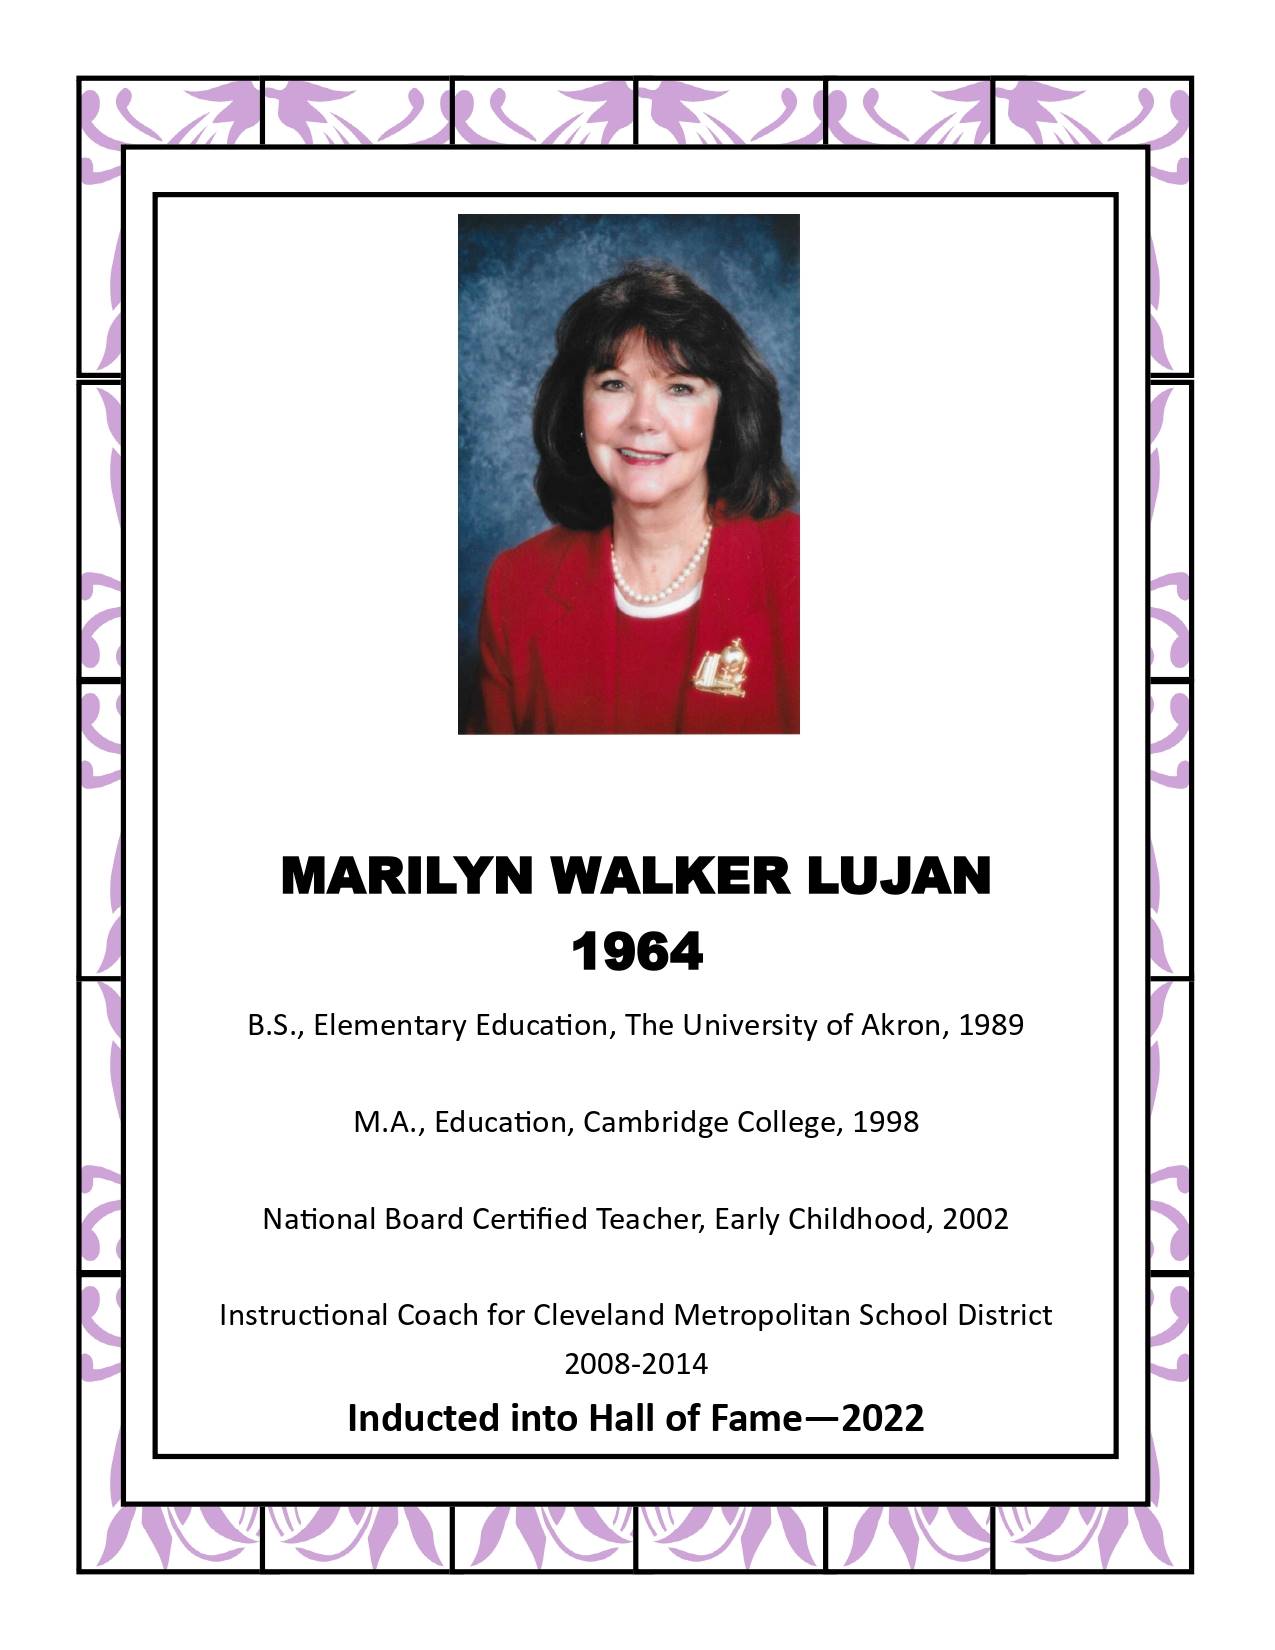 Marilyn Walker Lujan